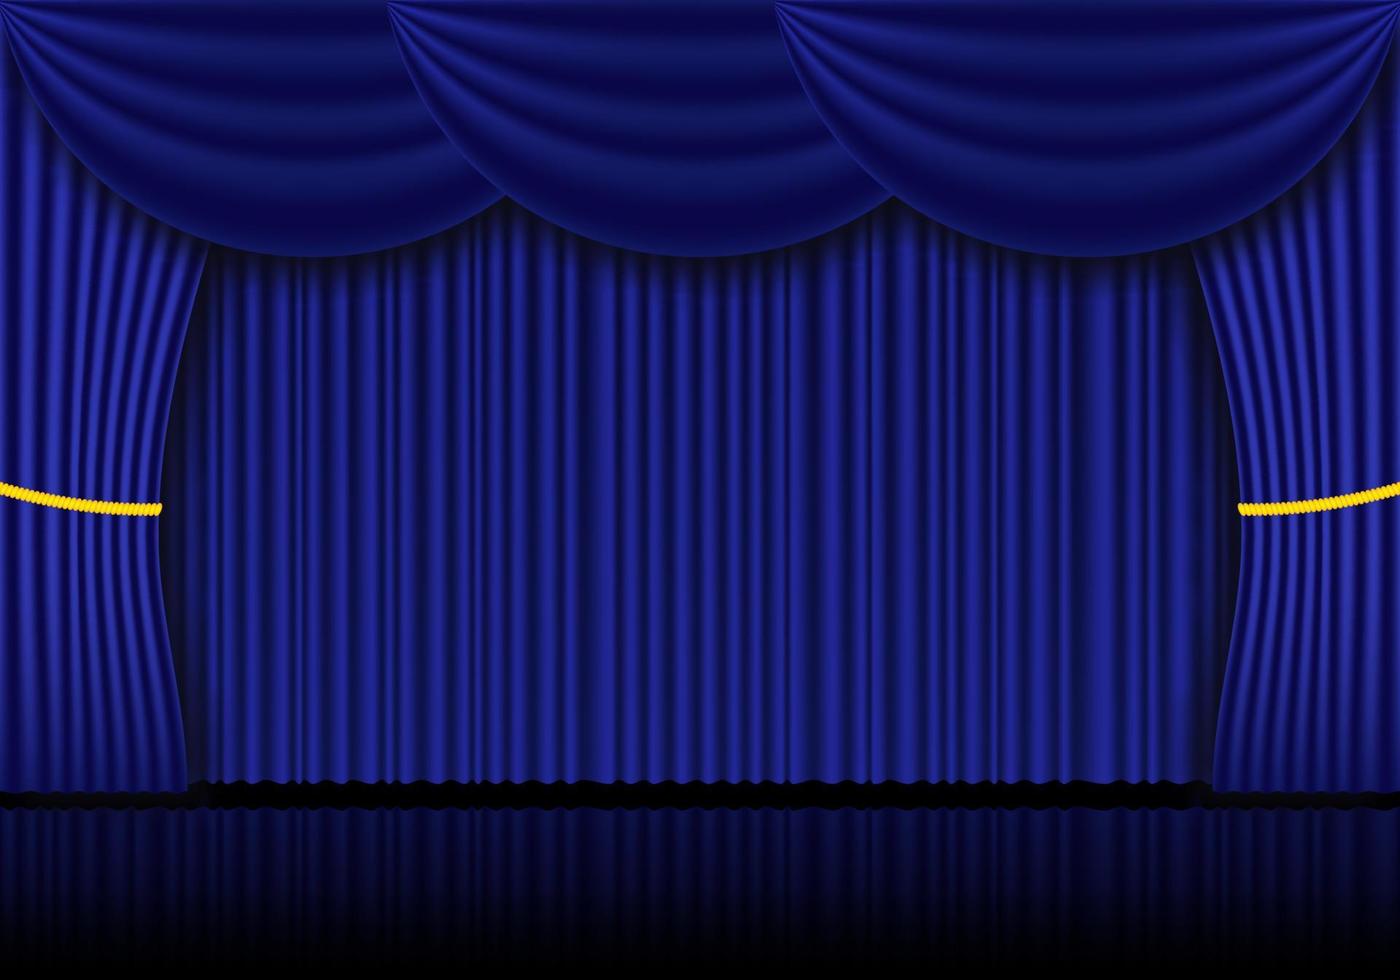 blauer vorhang opern-, kino- oder theaterbühnenvorhänge. Spotlight auf geschlossenem Samtvorhanghintergrund. Vektor-Illustration vektor